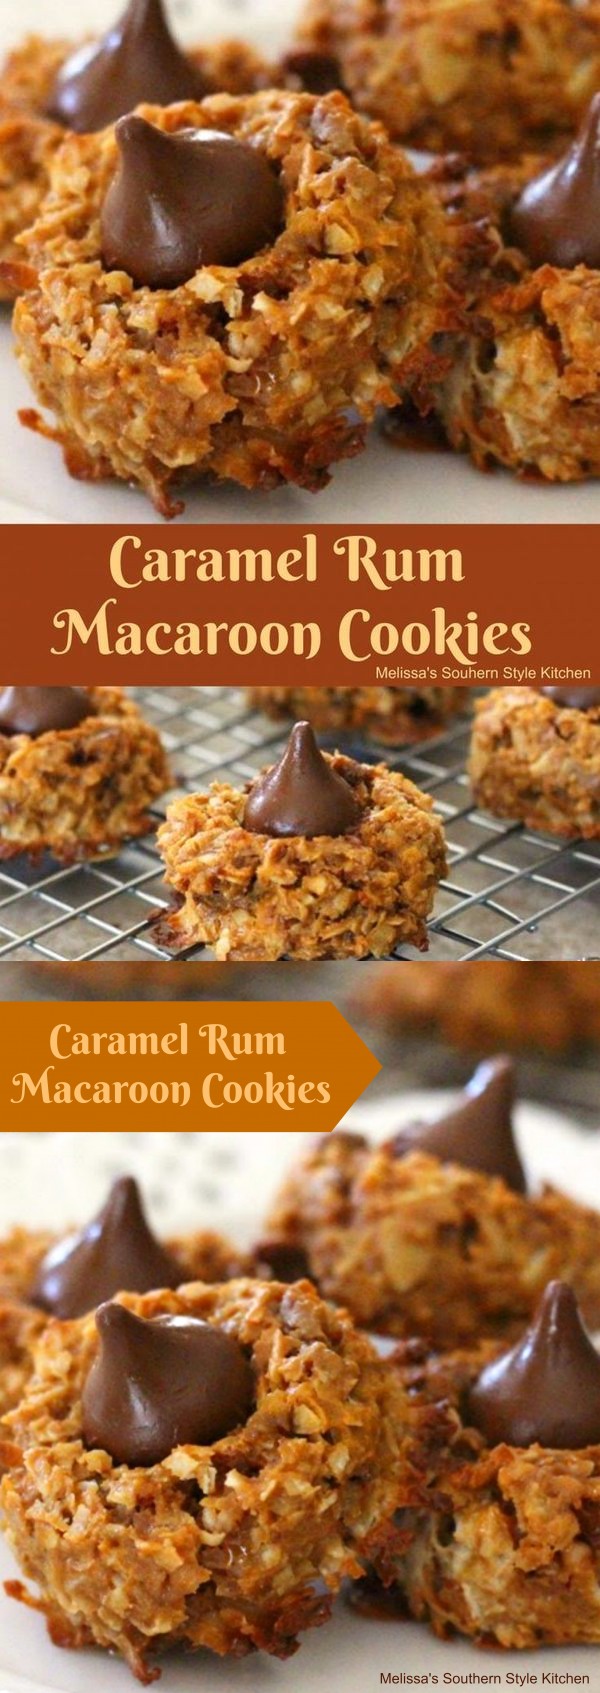 Caramel-Rum Macaroon Cookies